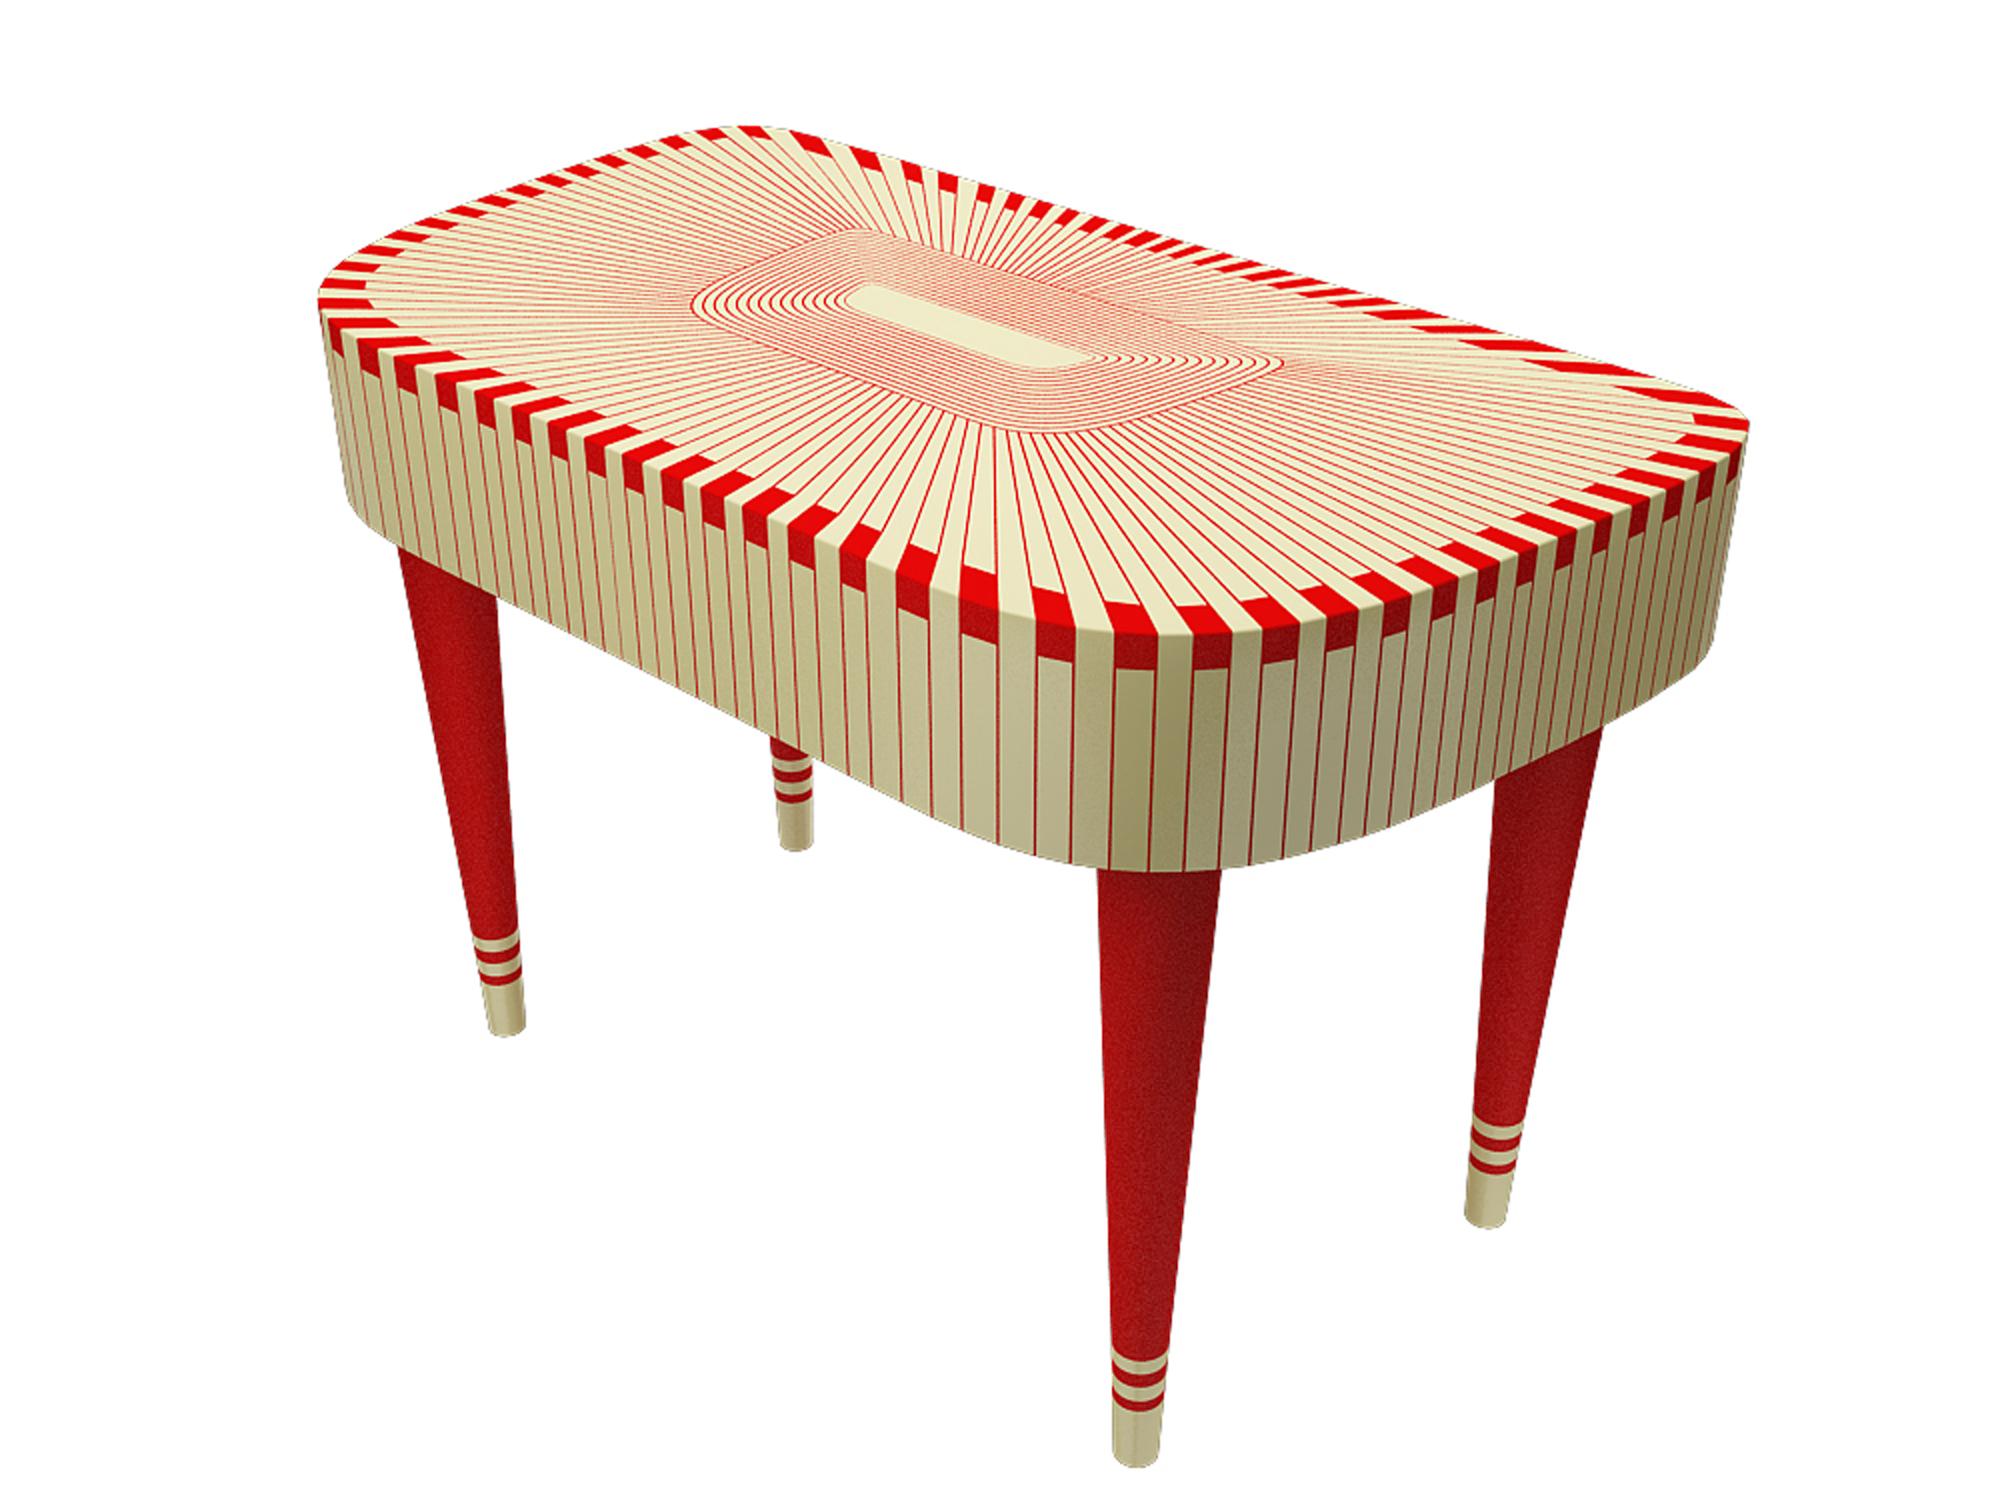 Paris Bureau Red and White Study Desk Writing Table by Matteo Cibic est une extraordinaire console/table à écrire, avec deux tiroirs. Il est disponible dans une gamme de couleurs, qui peuvent être personnalisées en fonction de l'espace.

L'artisanat